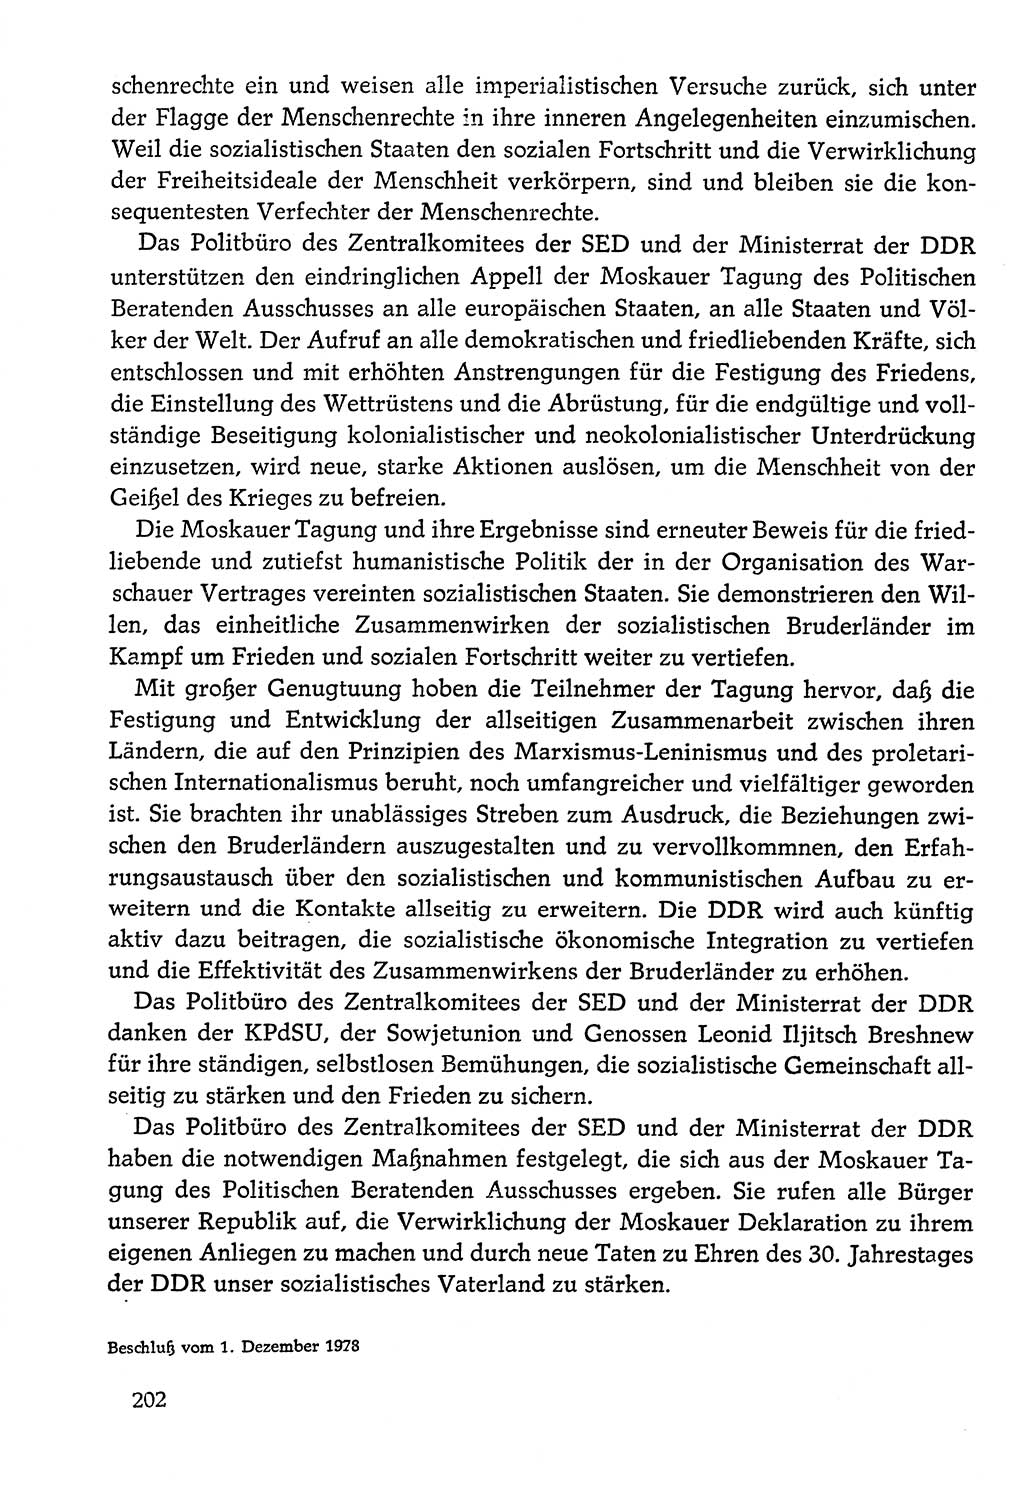 Dokumente der Sozialistischen Einheitspartei Deutschlands (SED) [Deutsche Demokratische Republik (DDR)] 1978-1979, Seite 202 (Dok. SED DDR 1978-1979, S. 202)